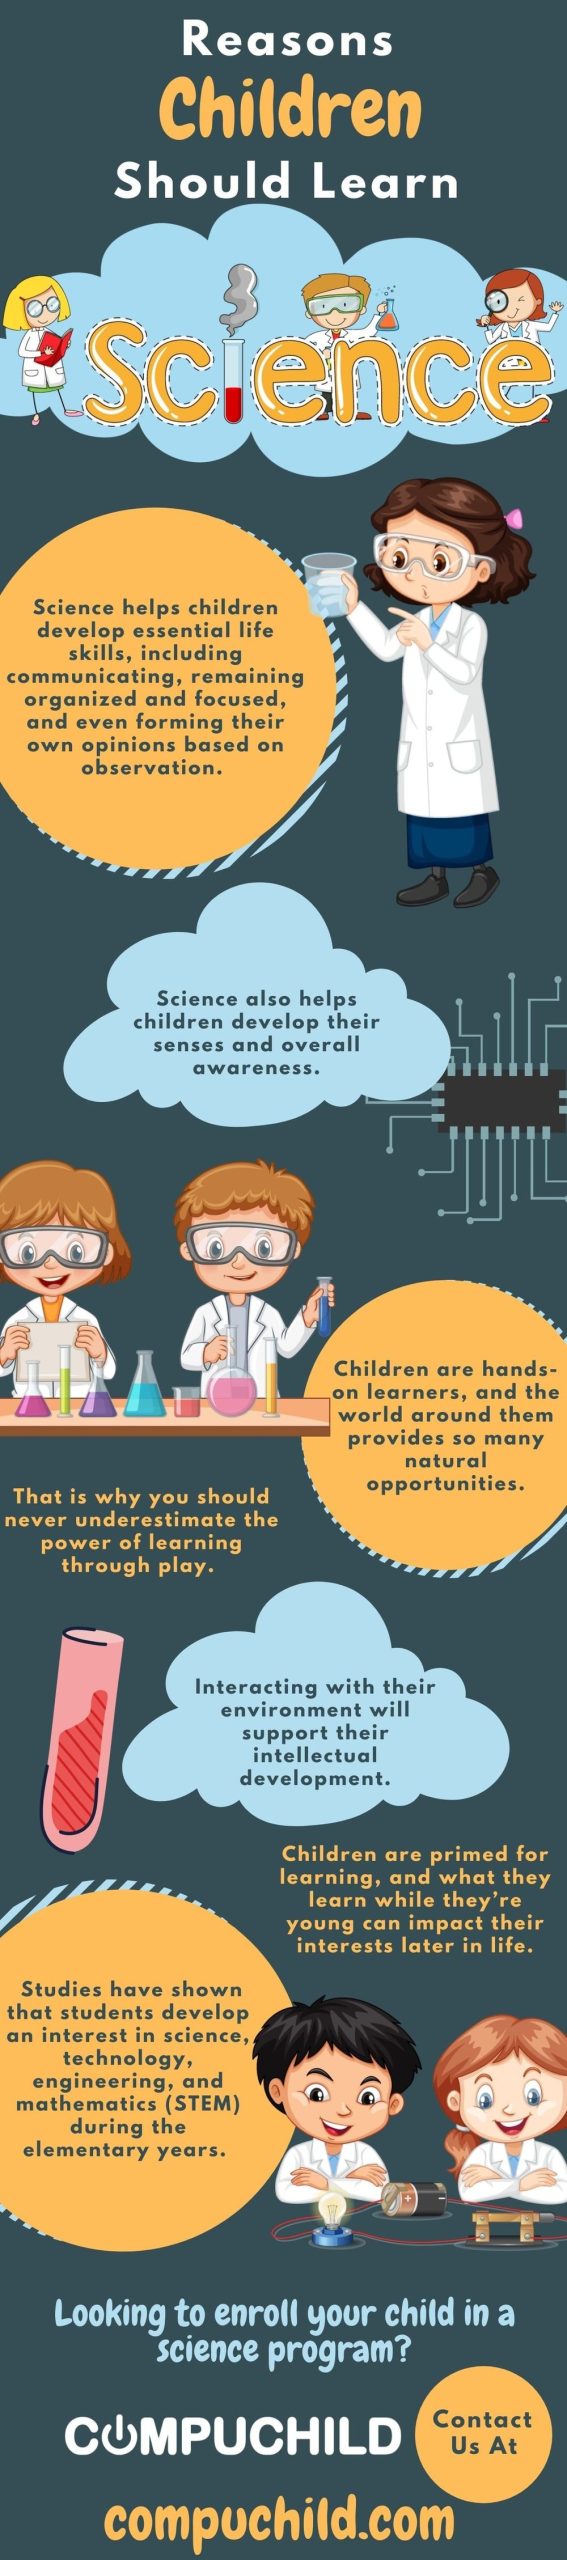 Reasons children should learn science_jpg_85